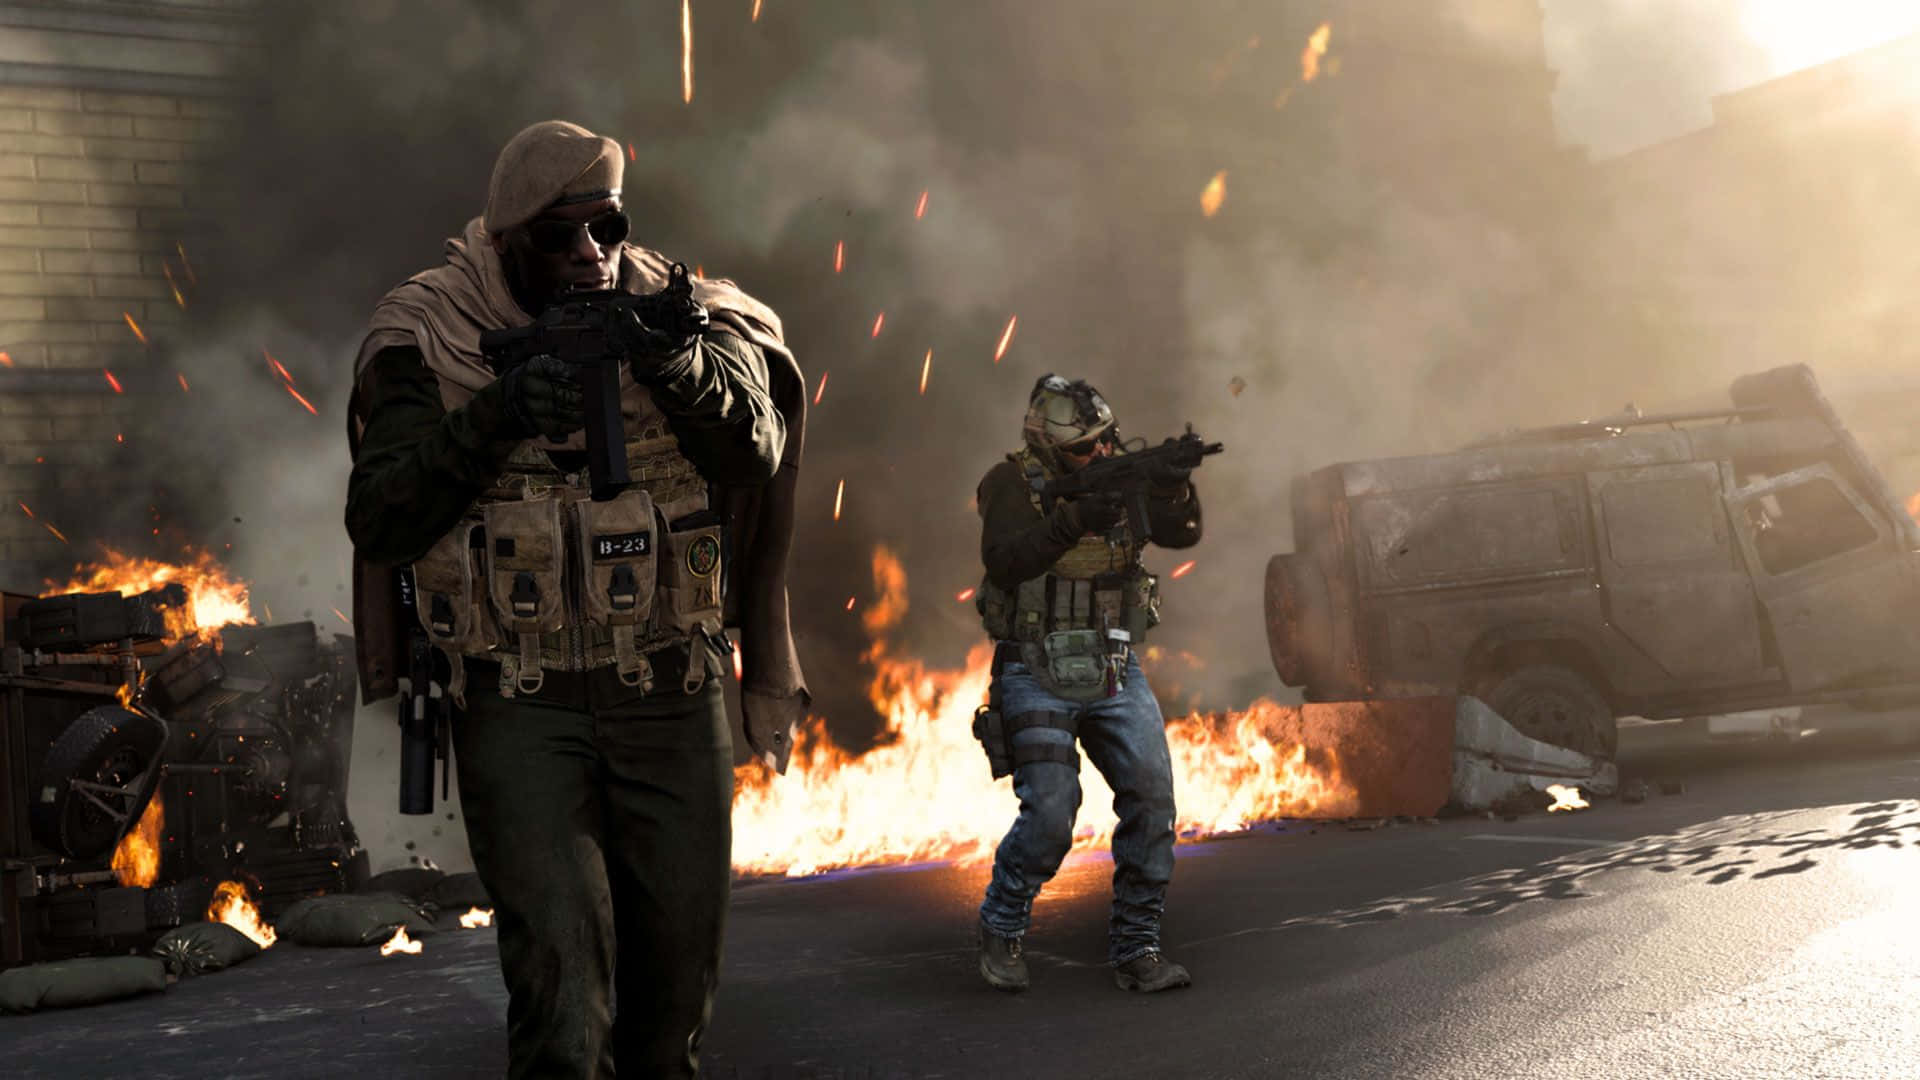 Epic Call Of Duty Battle Scene Wallpaper